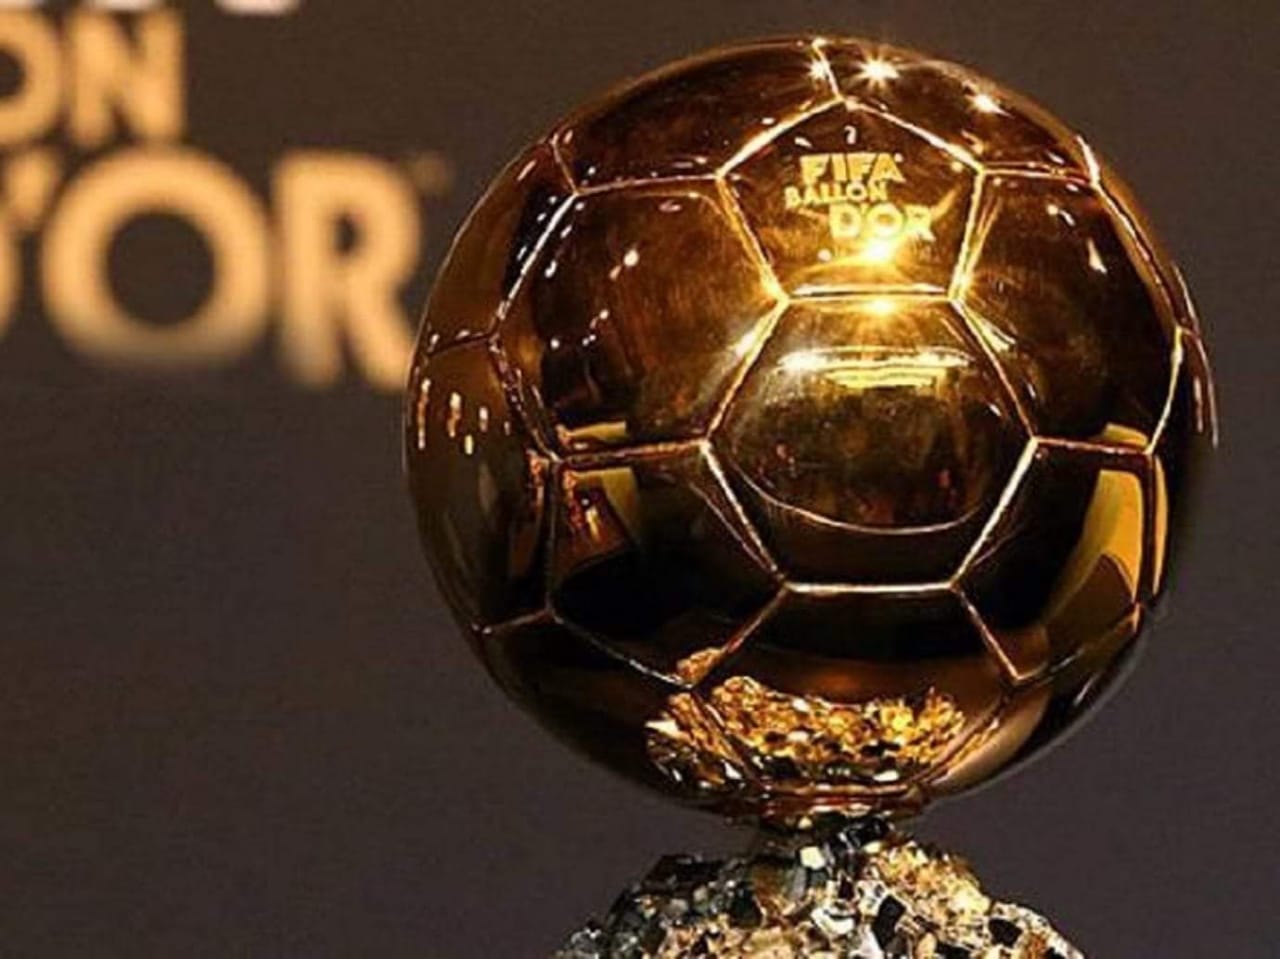   رسمياً: قائمة المرشحين لجائزة الكرة الذهبية 2018